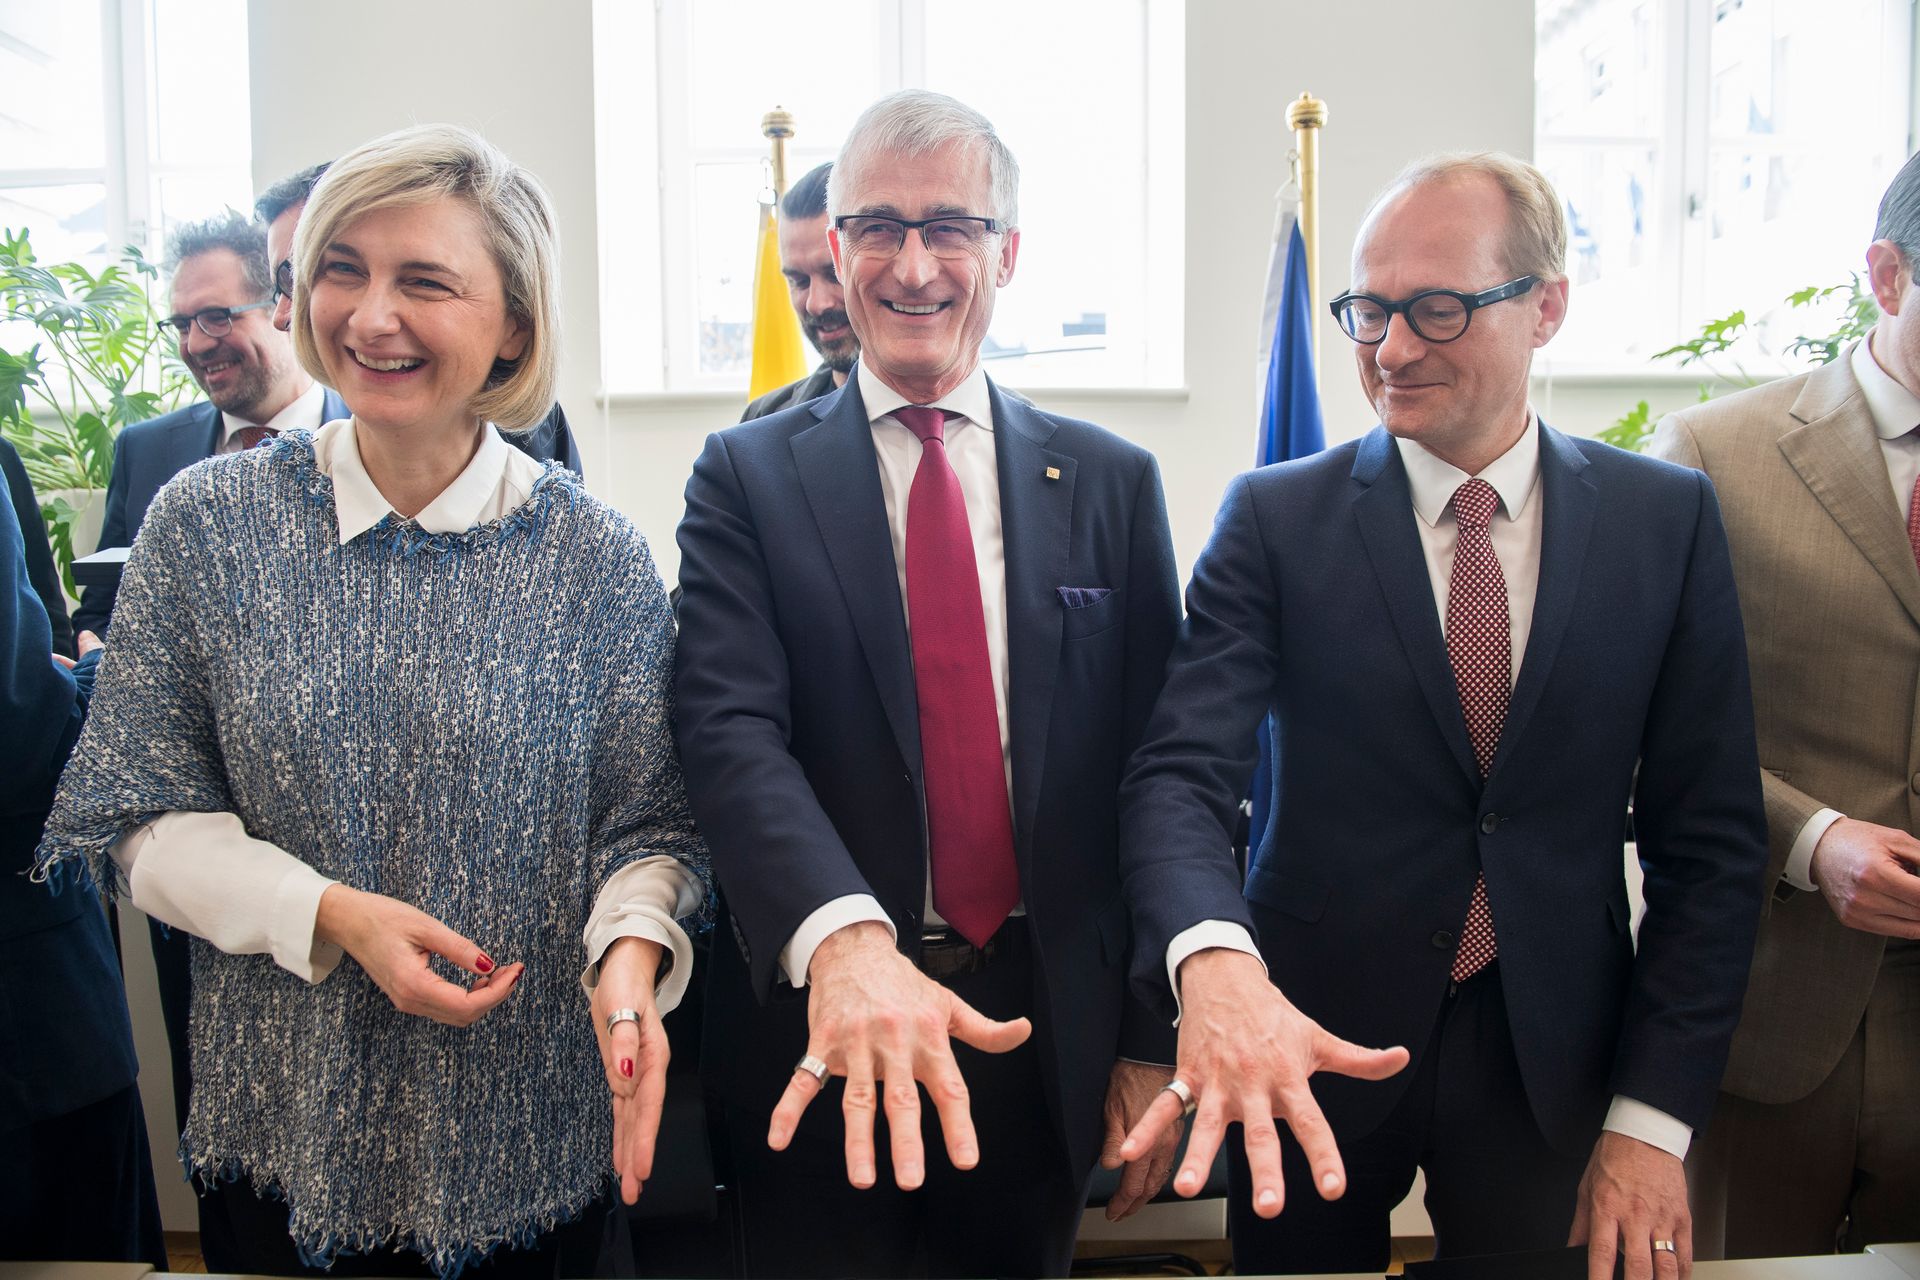 De gauche à droite: Hilde Crevits (CD&V) vice-ministre président, Geert Bourgeois (N-VA) ministre-président et Ben Weyts (N-VA) ministre du Transport.